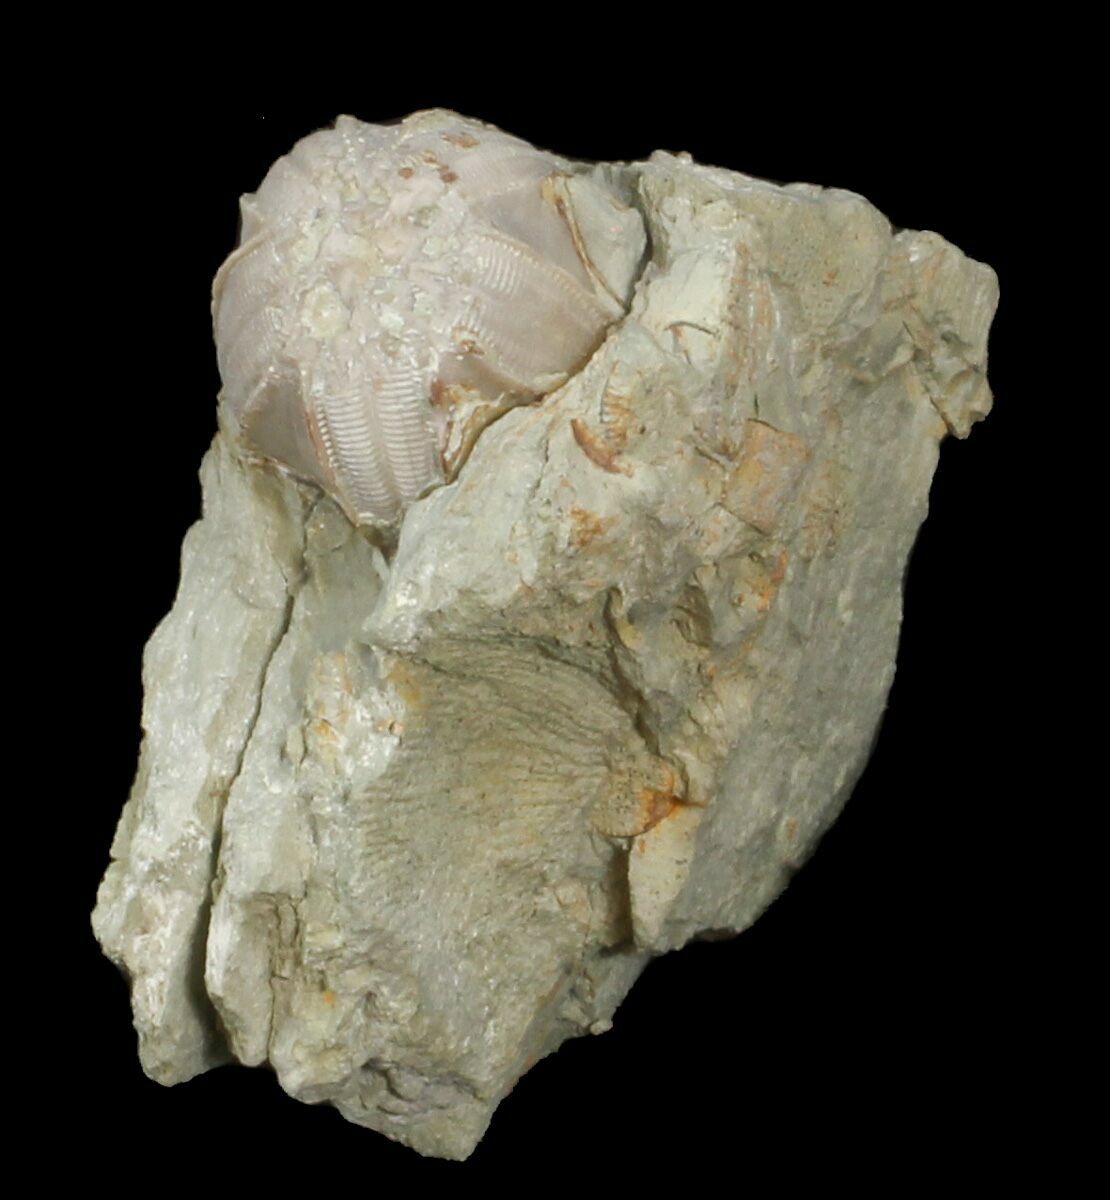 Blastoid (Pentremites) Fossil - Illinois For Sale (#42813) - FossilEra.com